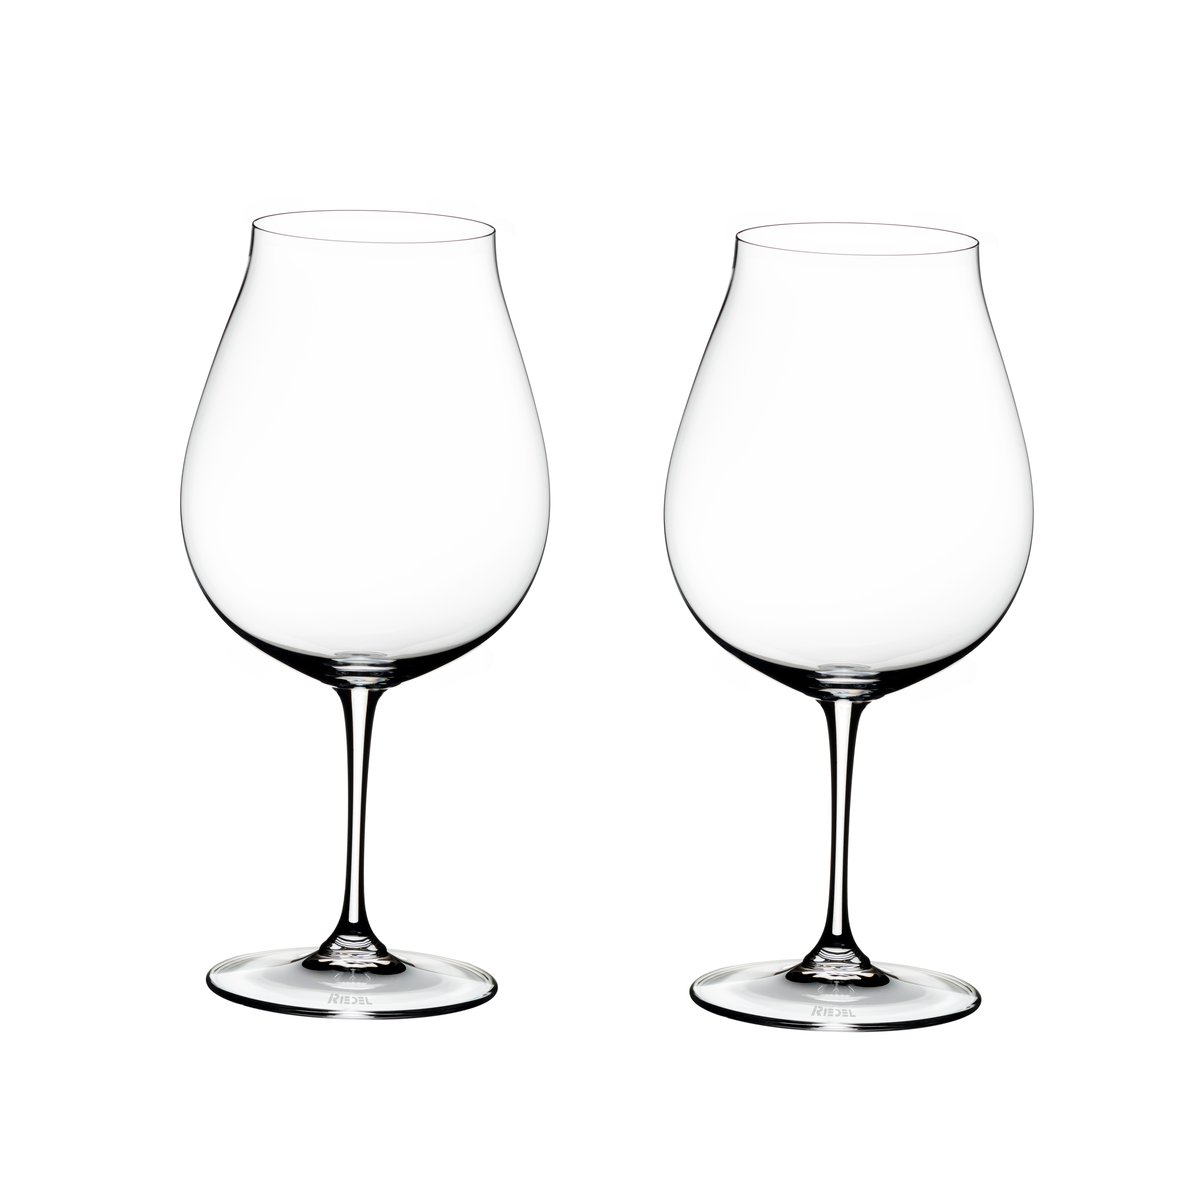 Riedel Vinum new world Pinot Noir vinglas 2-pack 80 cl